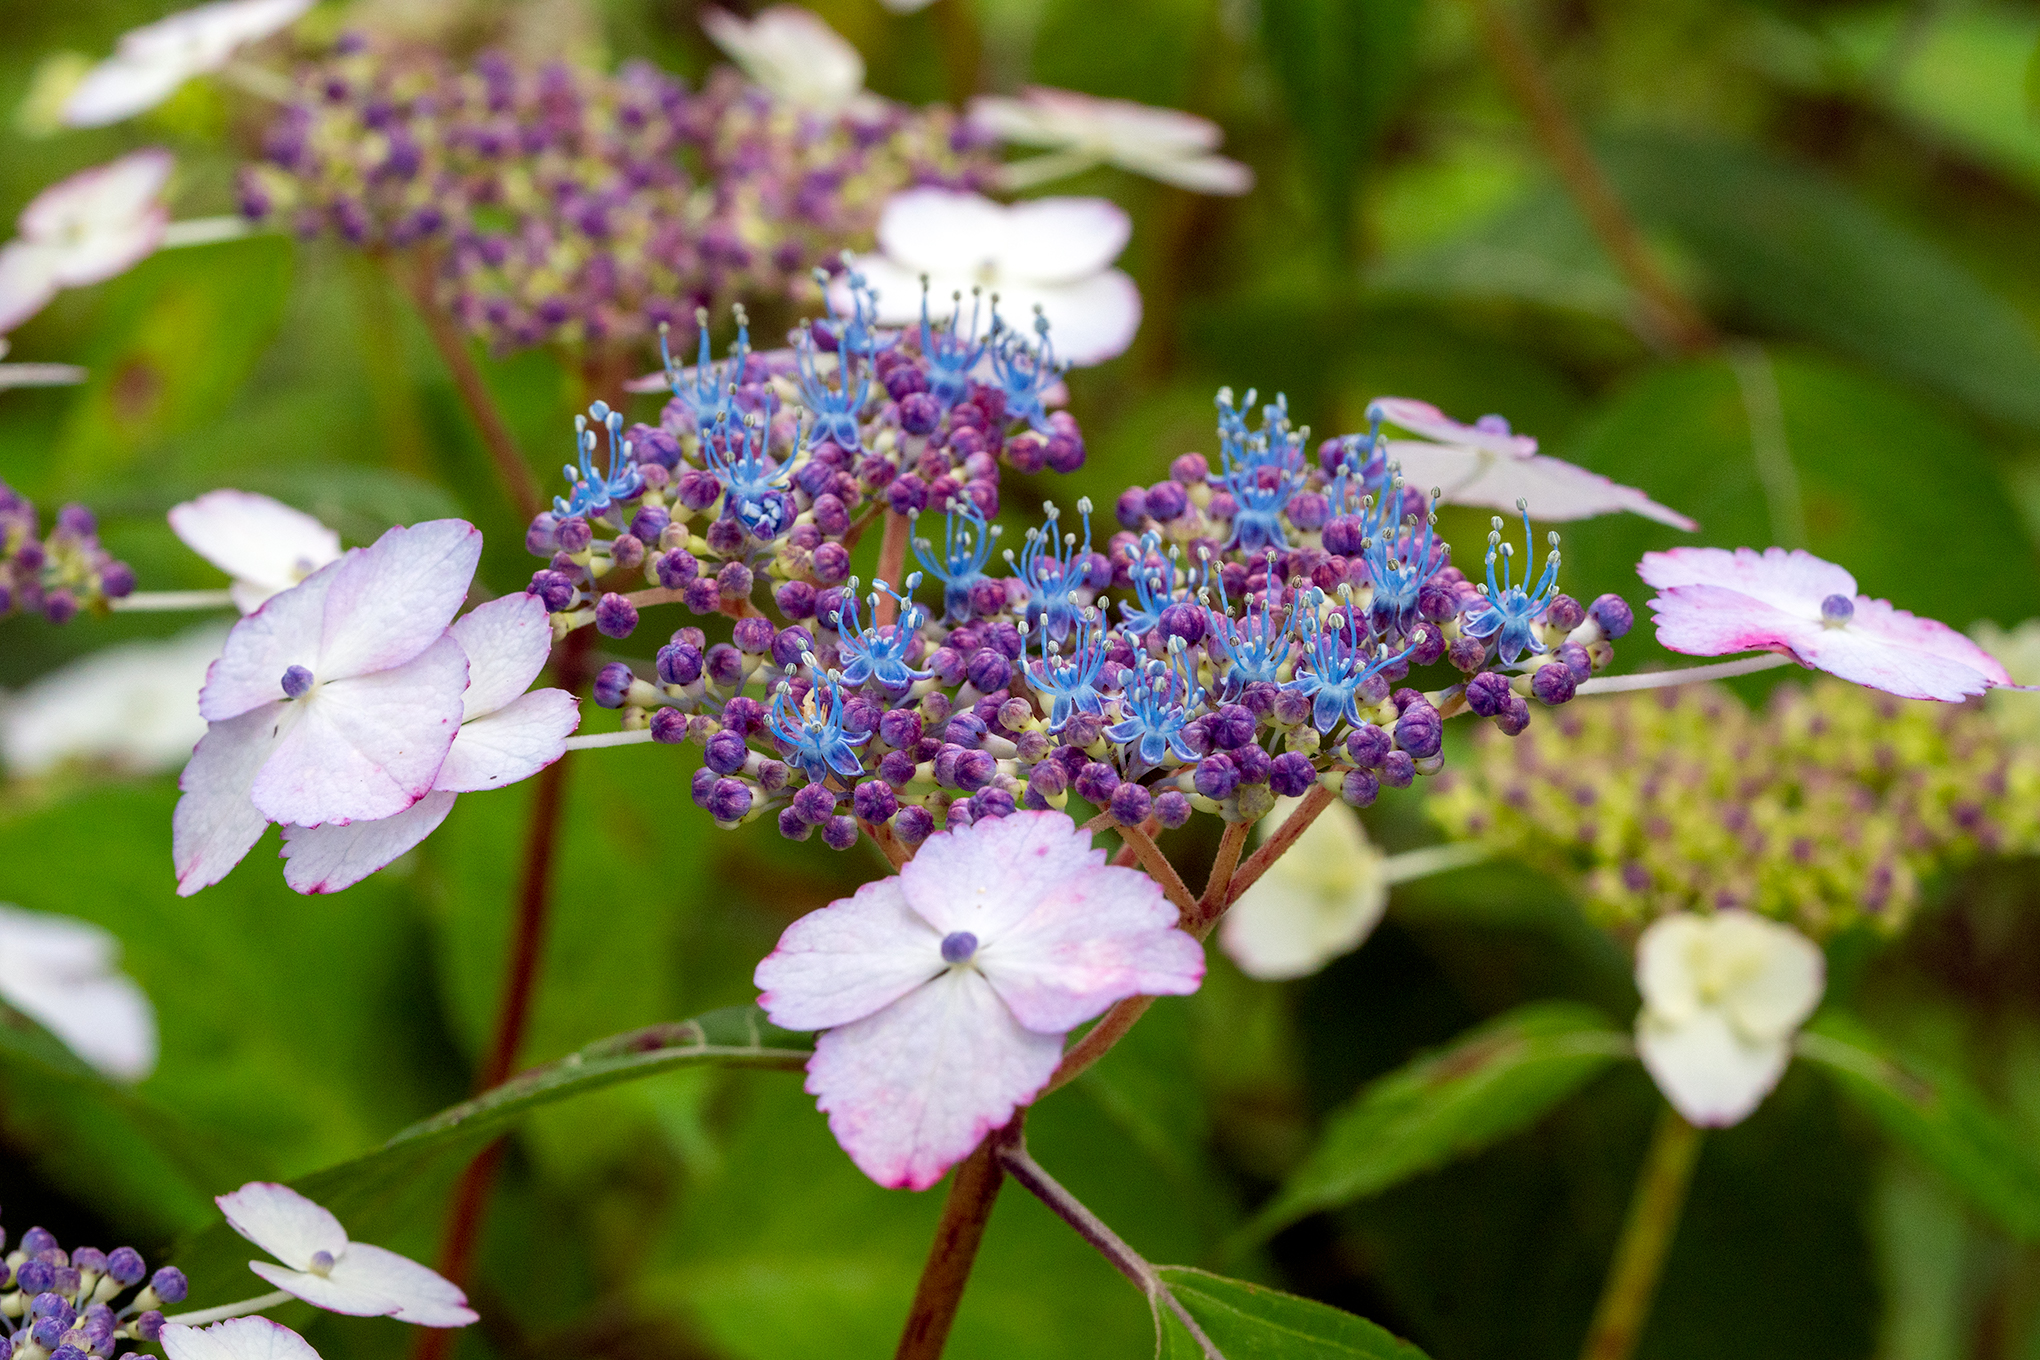 Koikoi 今日の花 ガクアジサイその２ この周りの花は飾りの花 装飾花 で虫を呼び寄せるためにあるのだそうです ガクアジサイは元々アジサイの原種なんですが 最近では園芸種も沢山ありますね 植物 園芸種 T Co Aryhbhtvzs Twitter